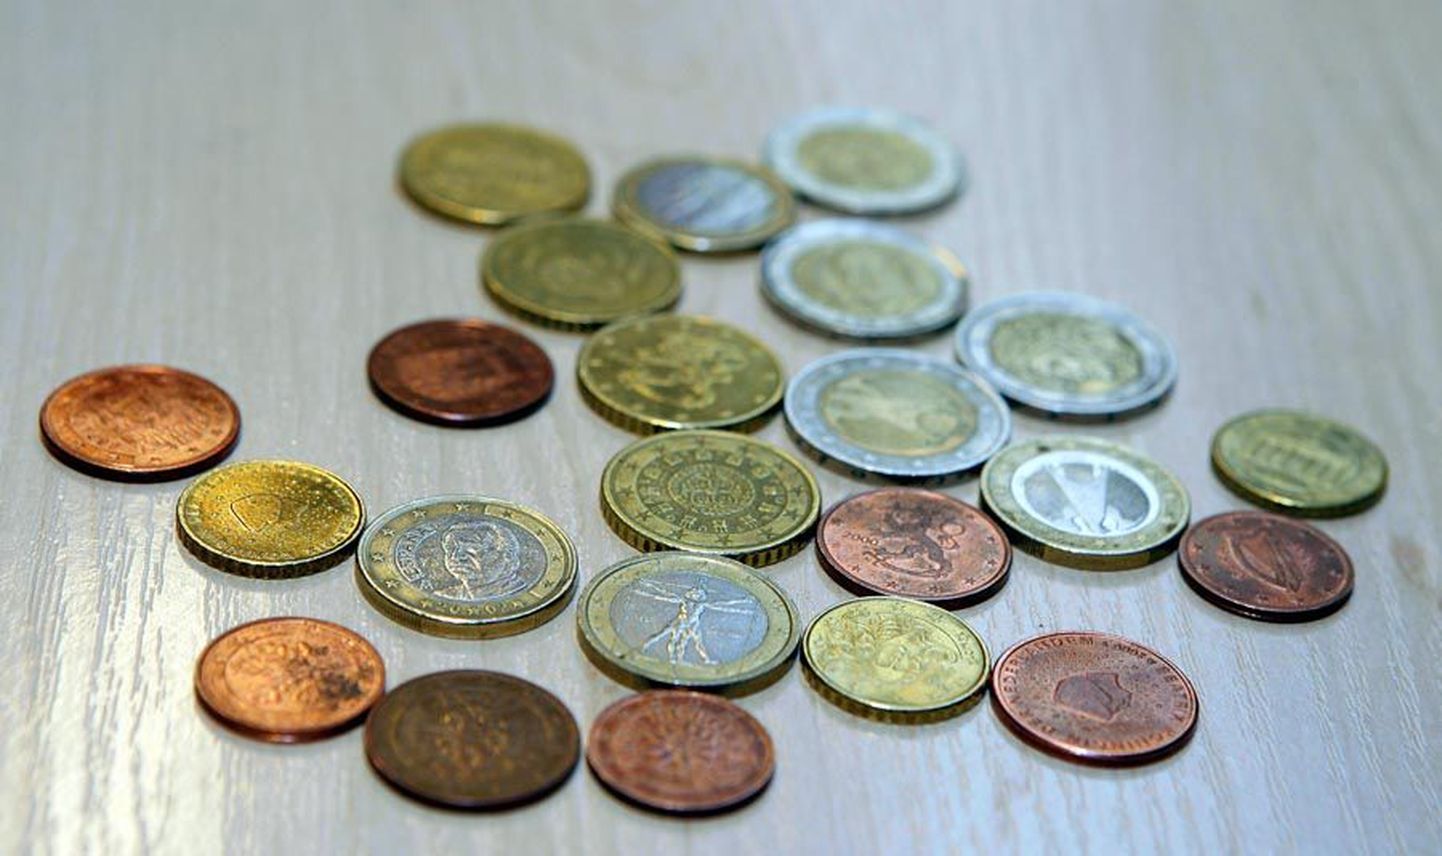 Eilne kiiruuring näitas, et Männimäe Selveri kassadesse oli eelmise päeva õhtuks kogunenud lisaks Eesti omadele kaheksa riigi rahvuslike külgedega euromünte.